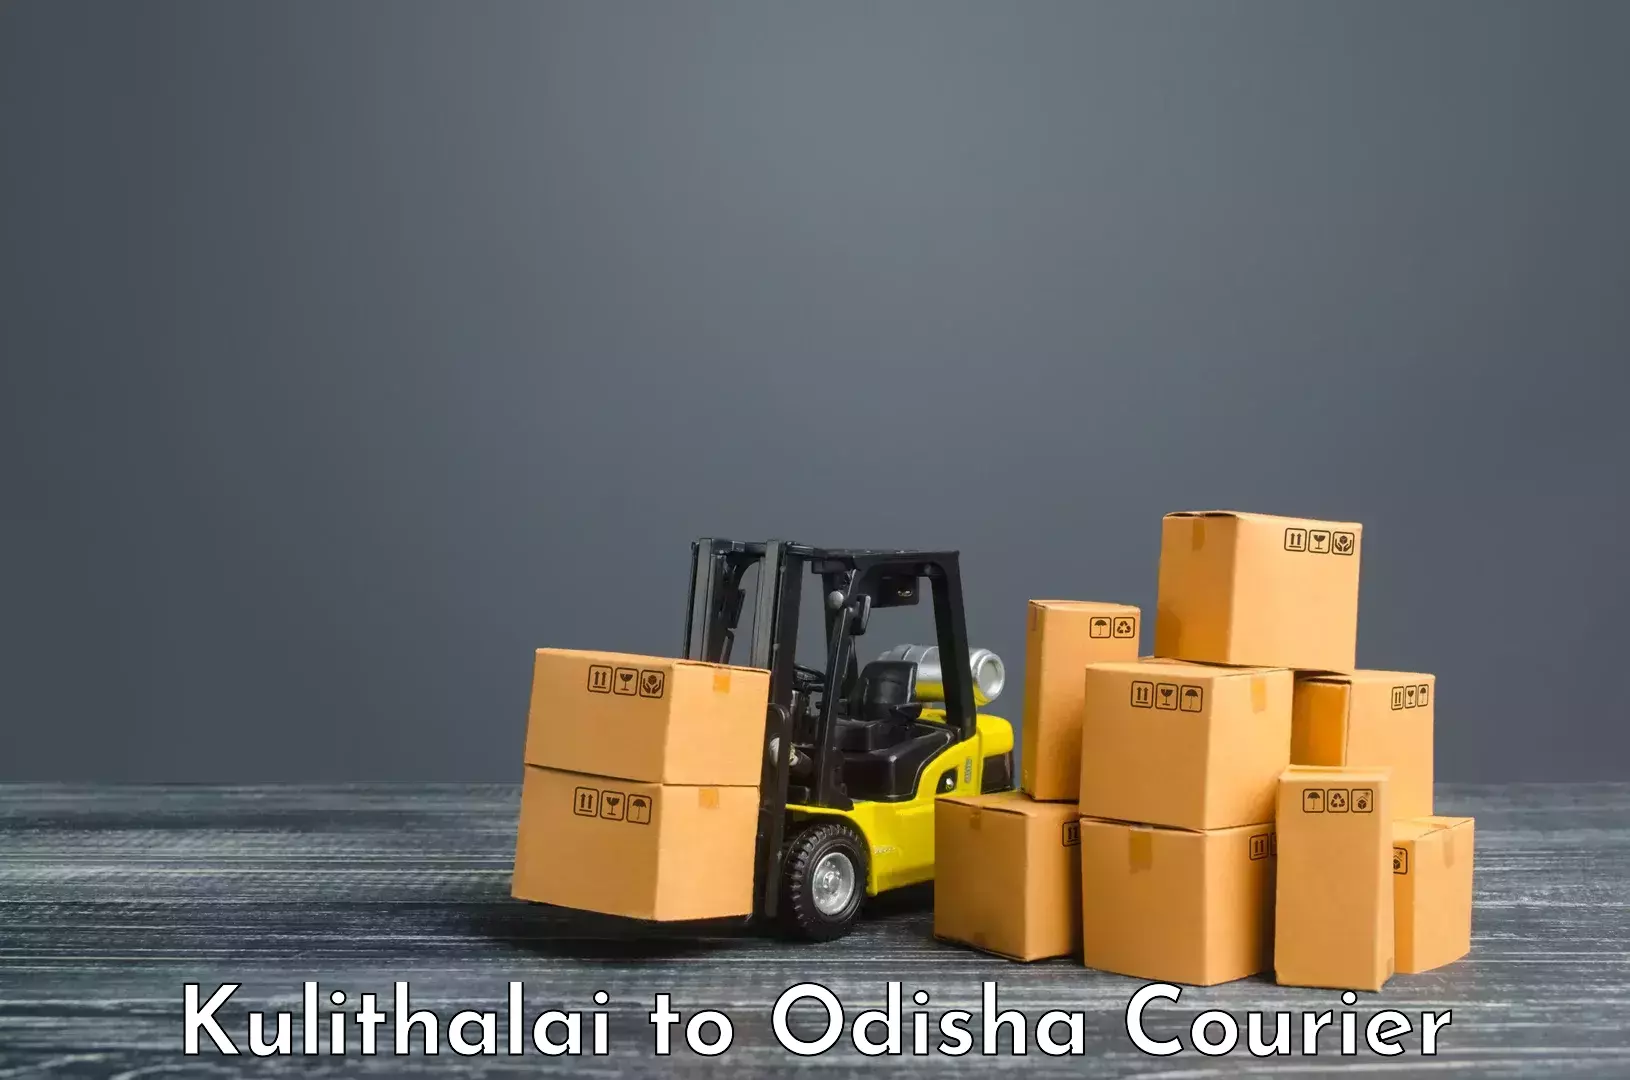 Bulk courier orders Kulithalai to Kotapad